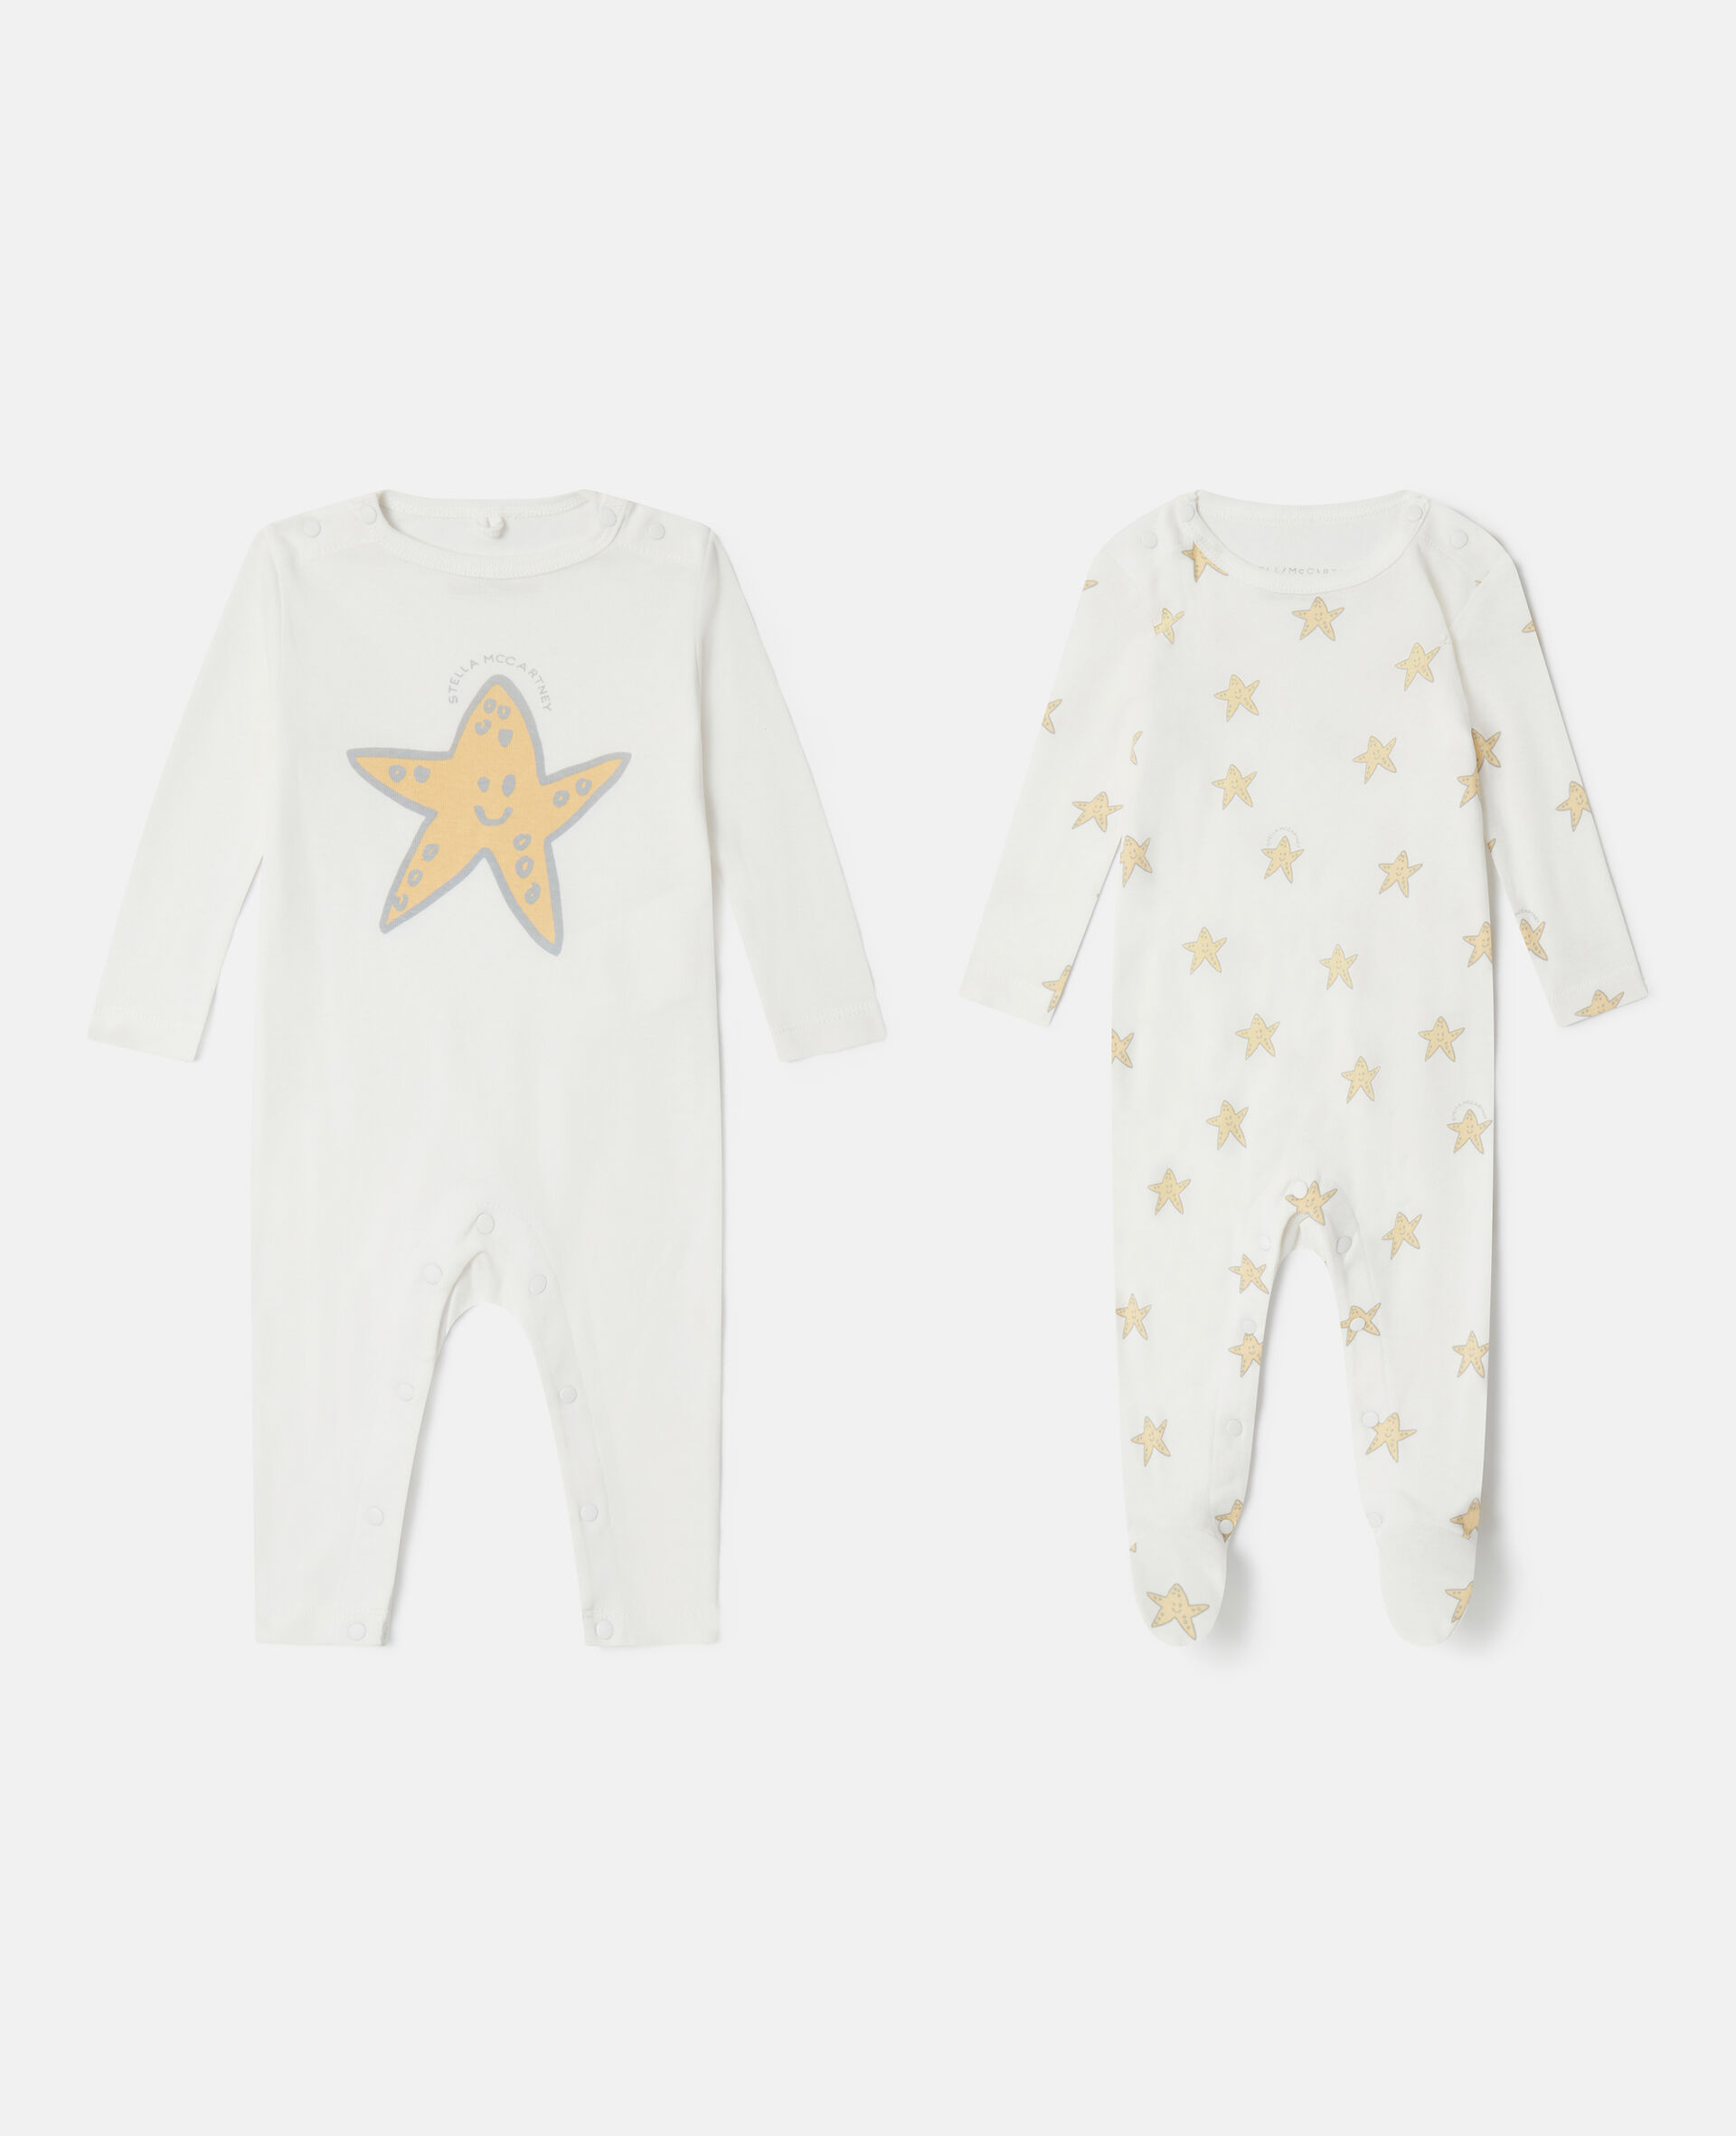 Smiling Stella Star Print Sleepsuit Set-Multicolored-medium